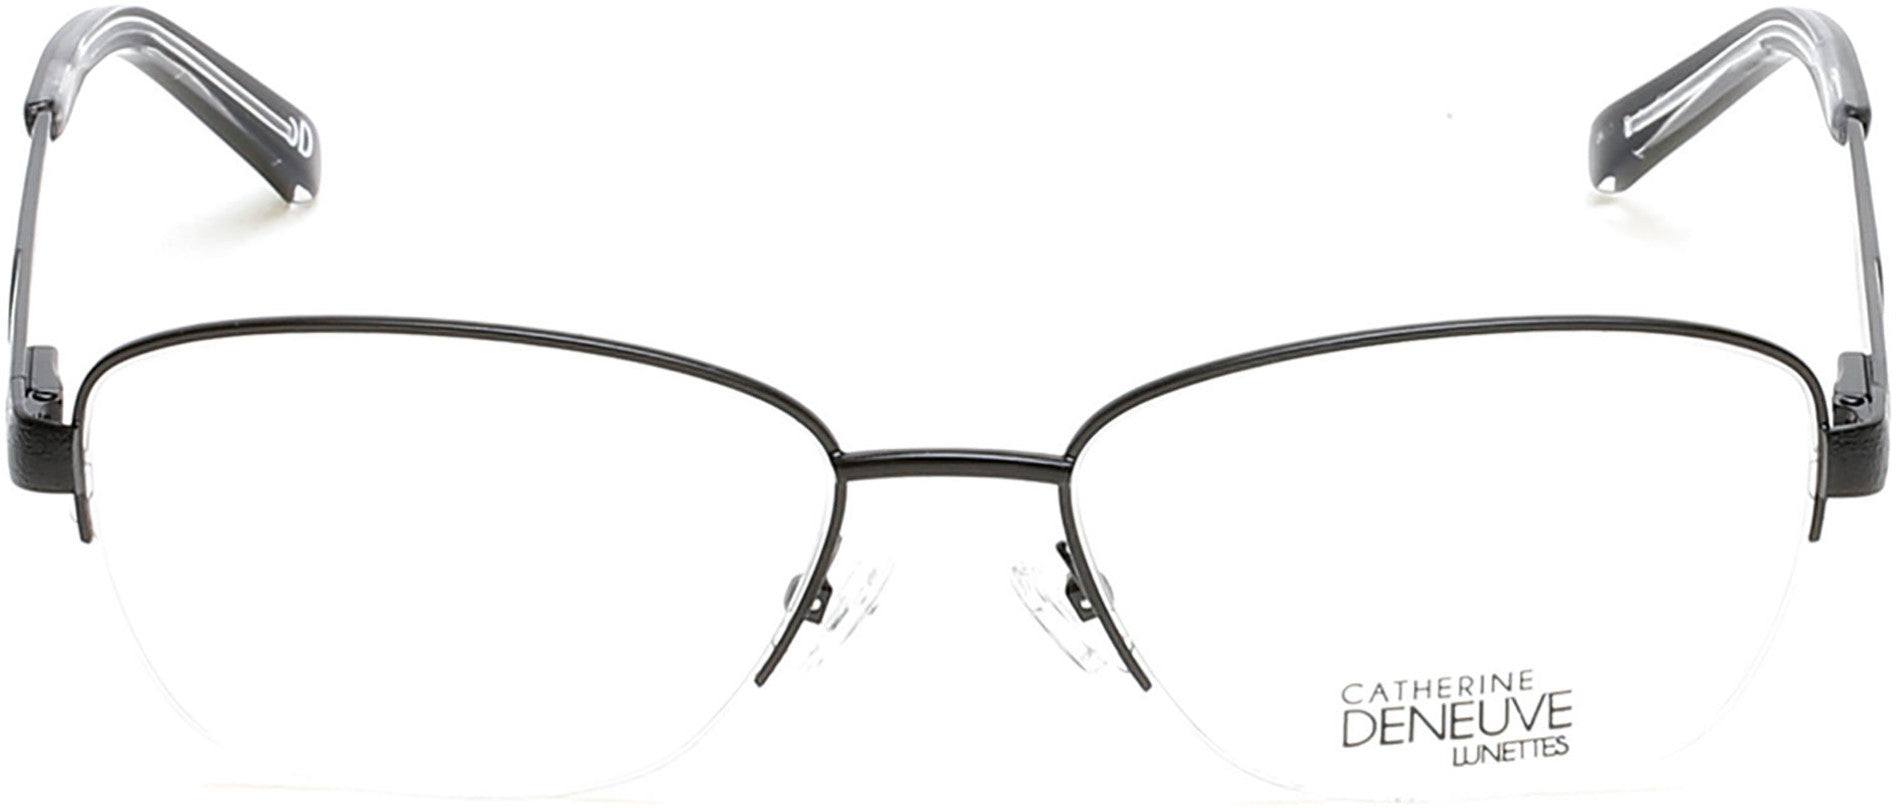 Catherine Deneuve CD0396 Eyeglasses 001-001 - Shiny Black